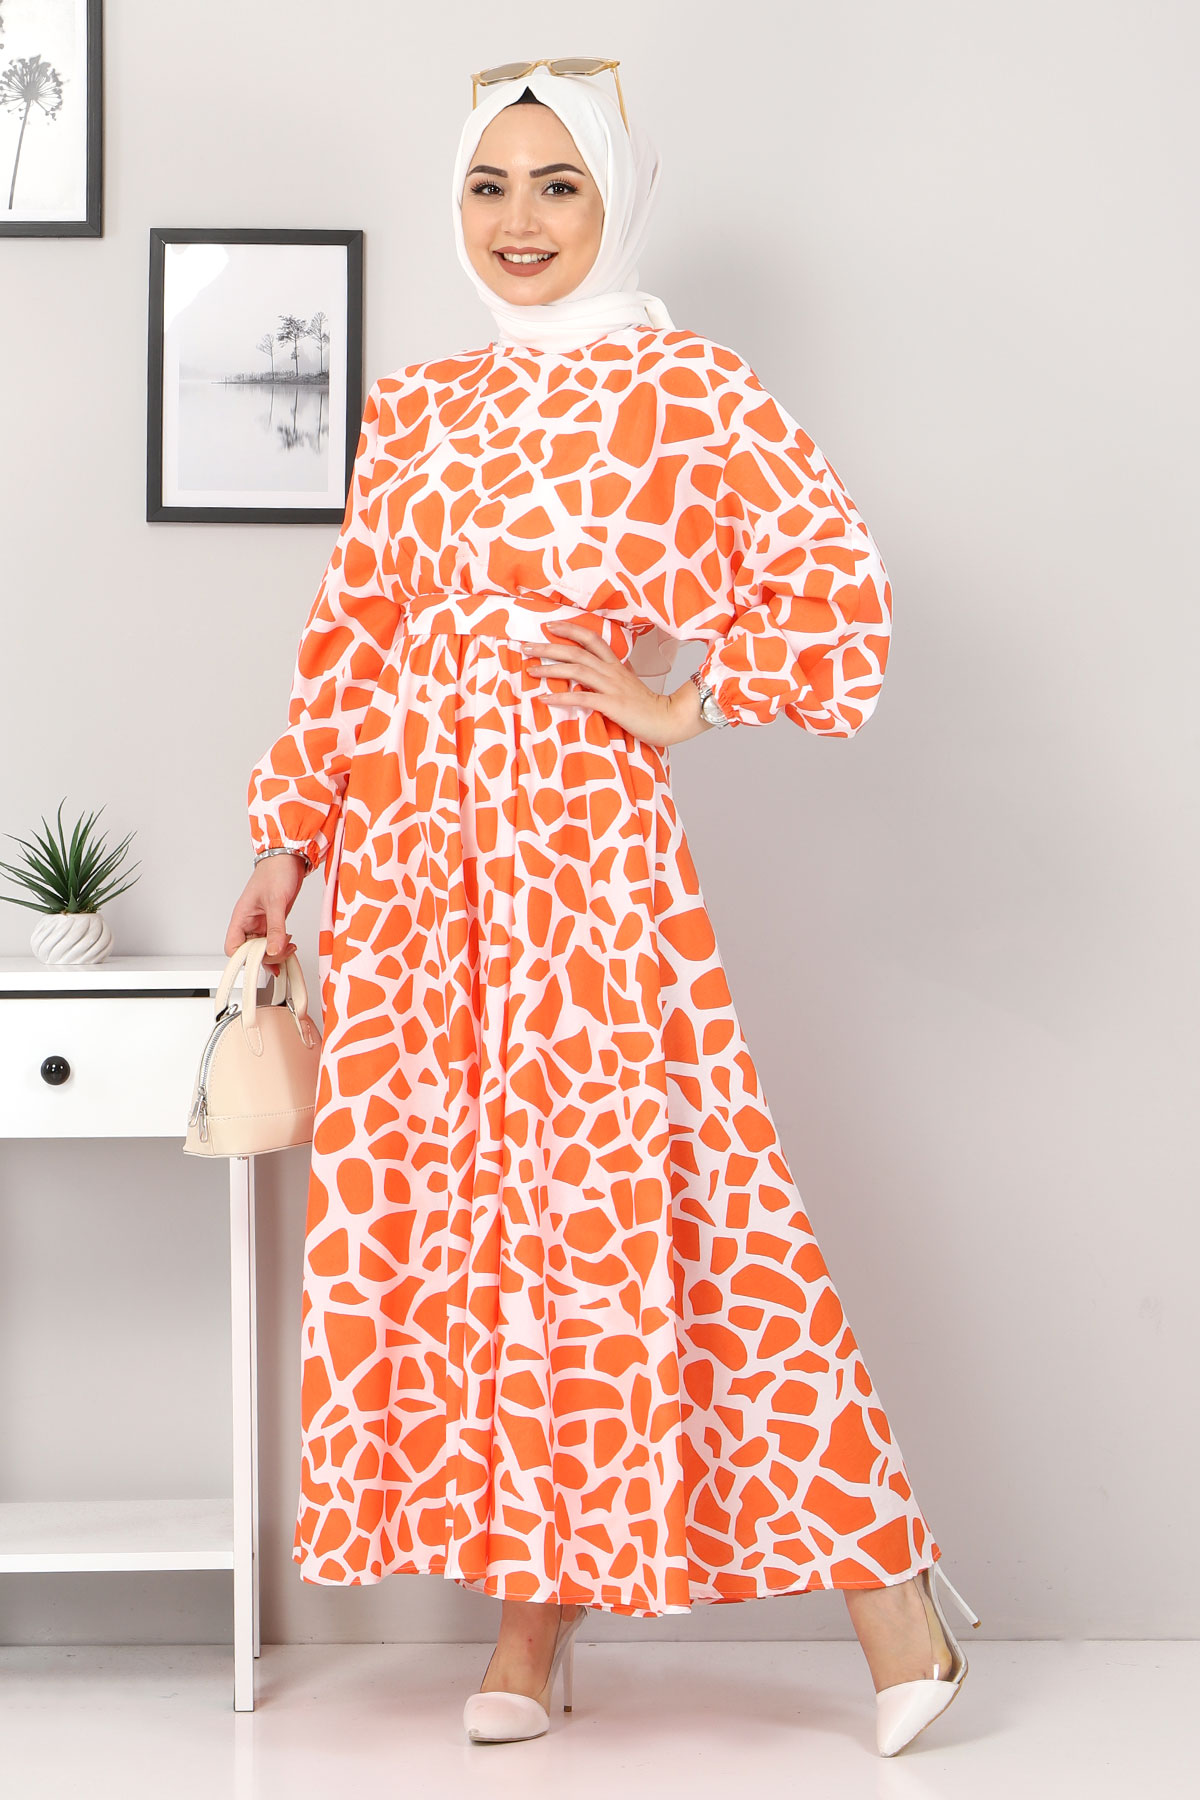 Tesettür Dünyası - Women's Printed Dress TSD4414 Orange